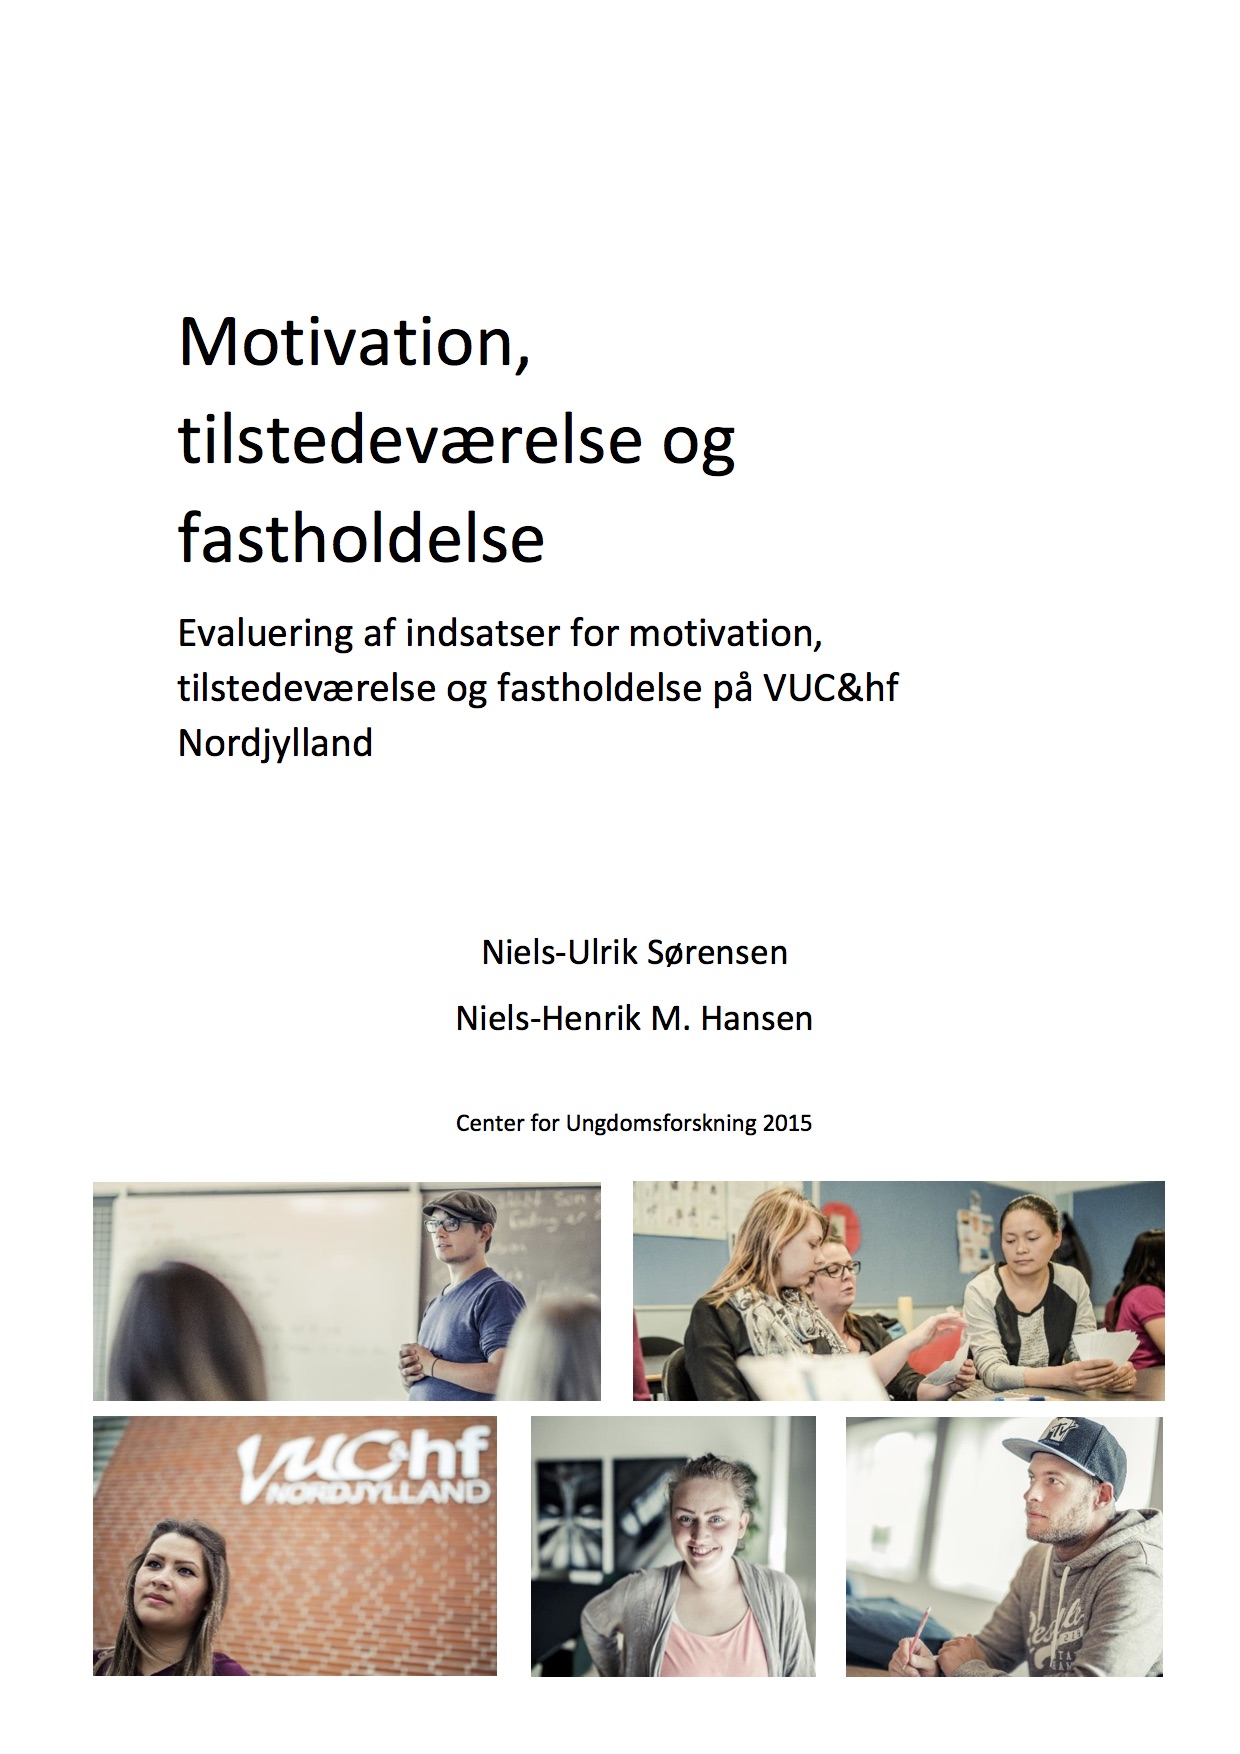 Motivation, tilstedeværelse og fastholdelse – Evaluering af indsatser for motivation, tilstedeværelse og fastholdelse på VUC og HF Nordjylland